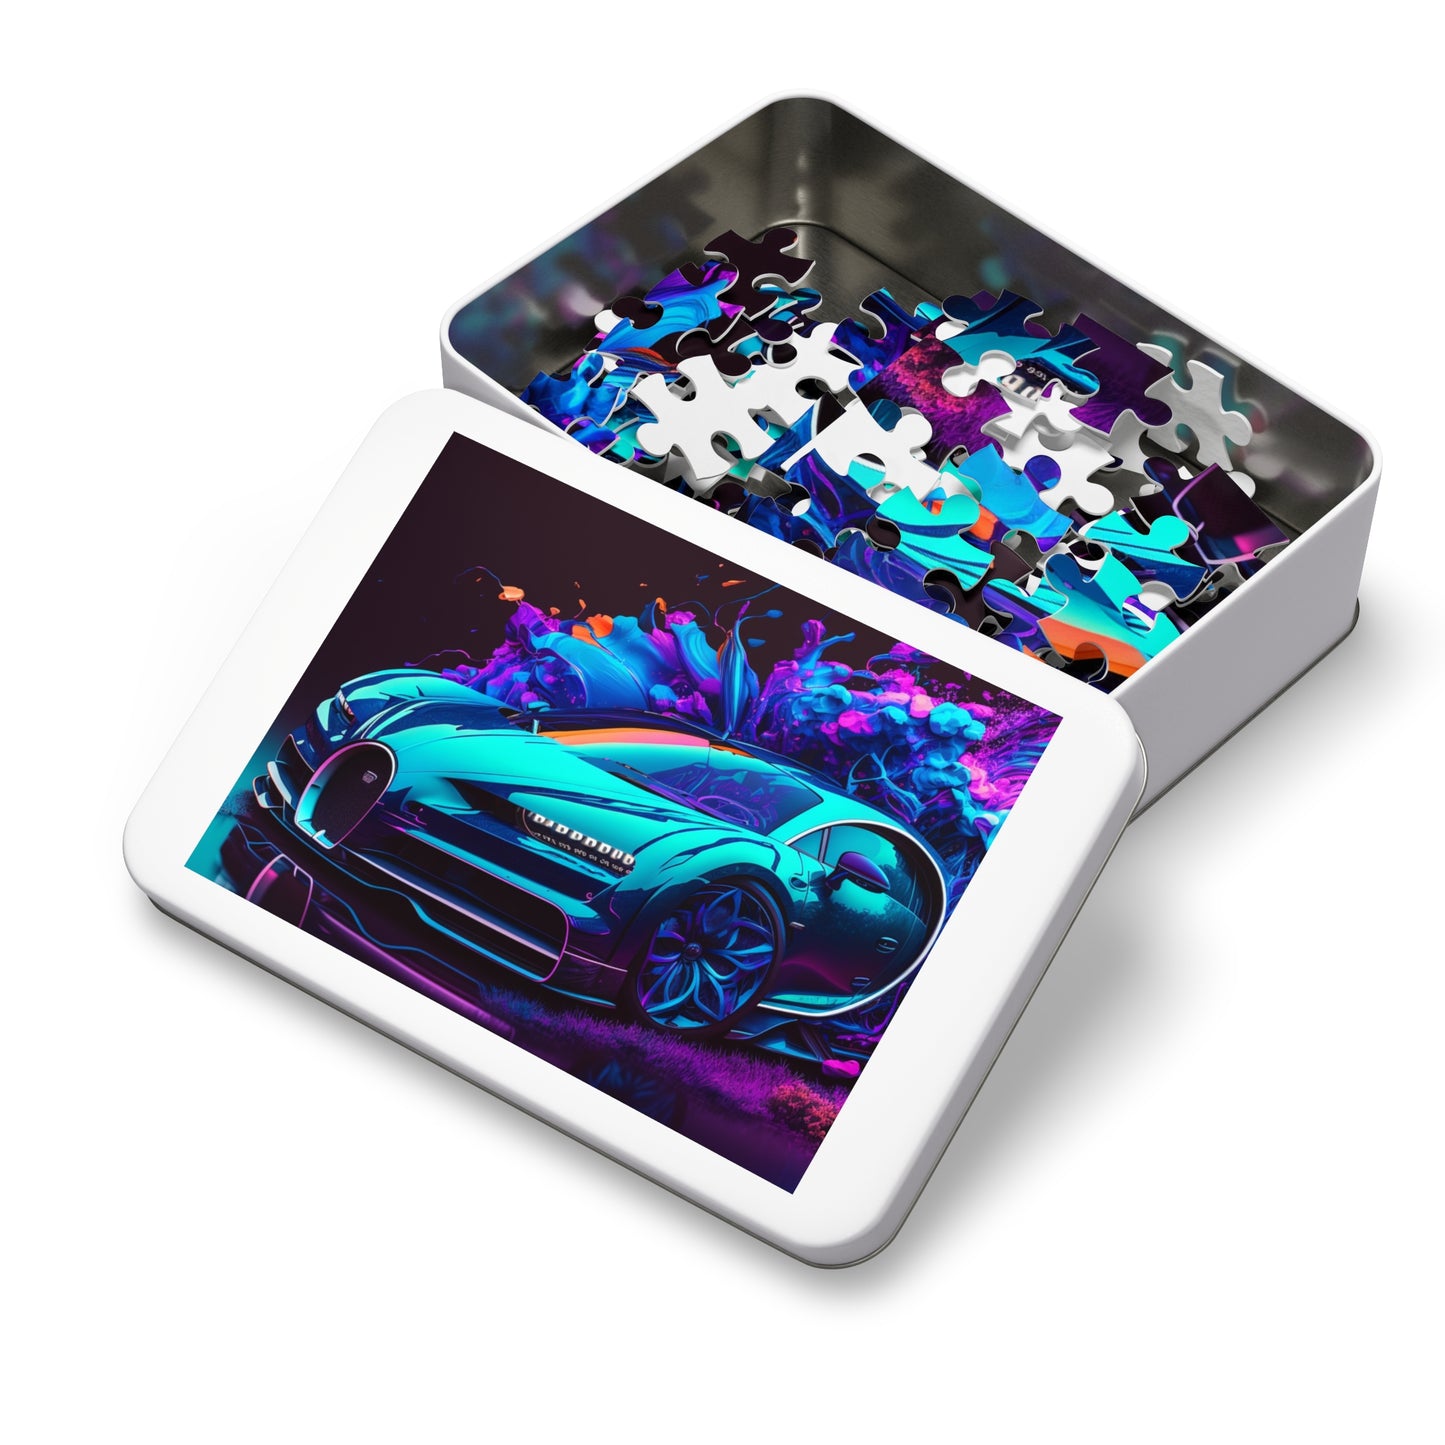 Jigsaw Puzzle (30, 110, 252, 500,1000-Piece) Bugatti Neon Chiron 3